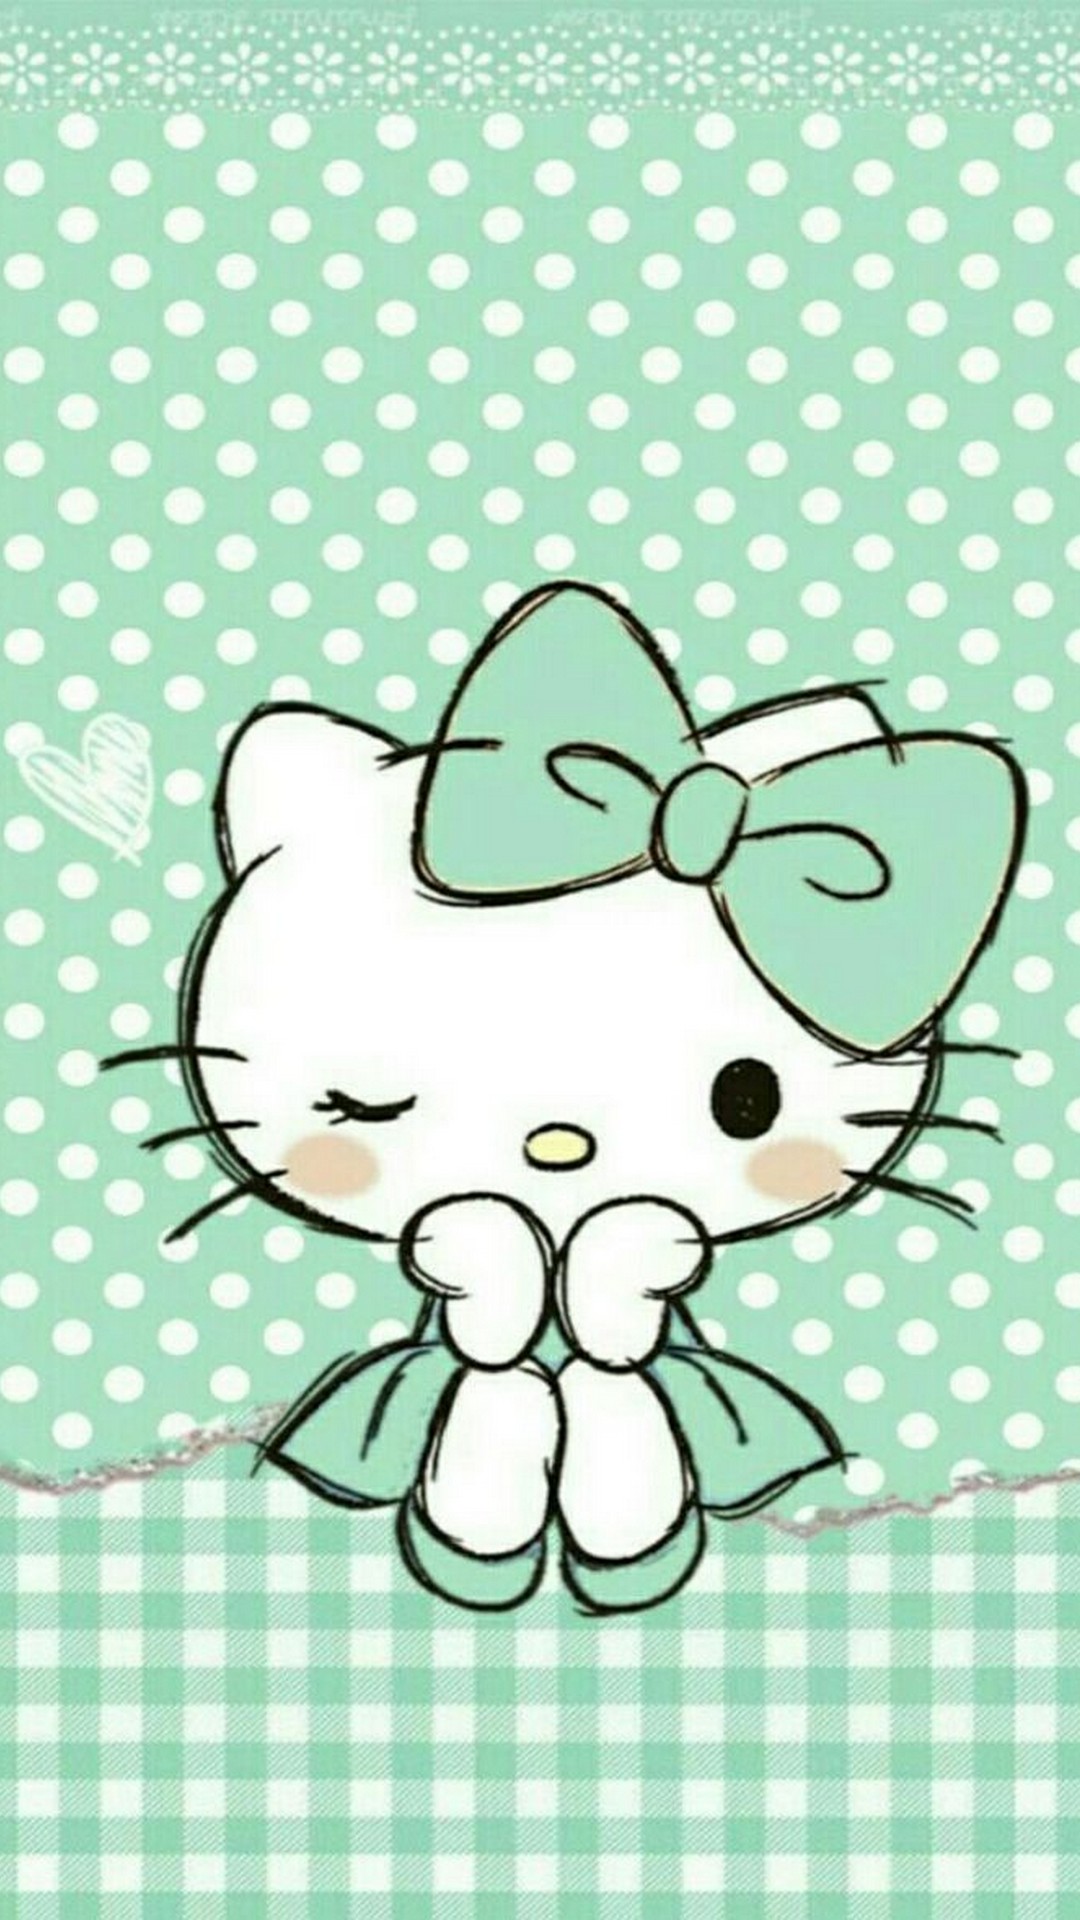 Hello Kitty Wallpaper For Android With Image Resolution - Fondos De Pantalla De Hello Kitty Celular - HD Wallpaper 